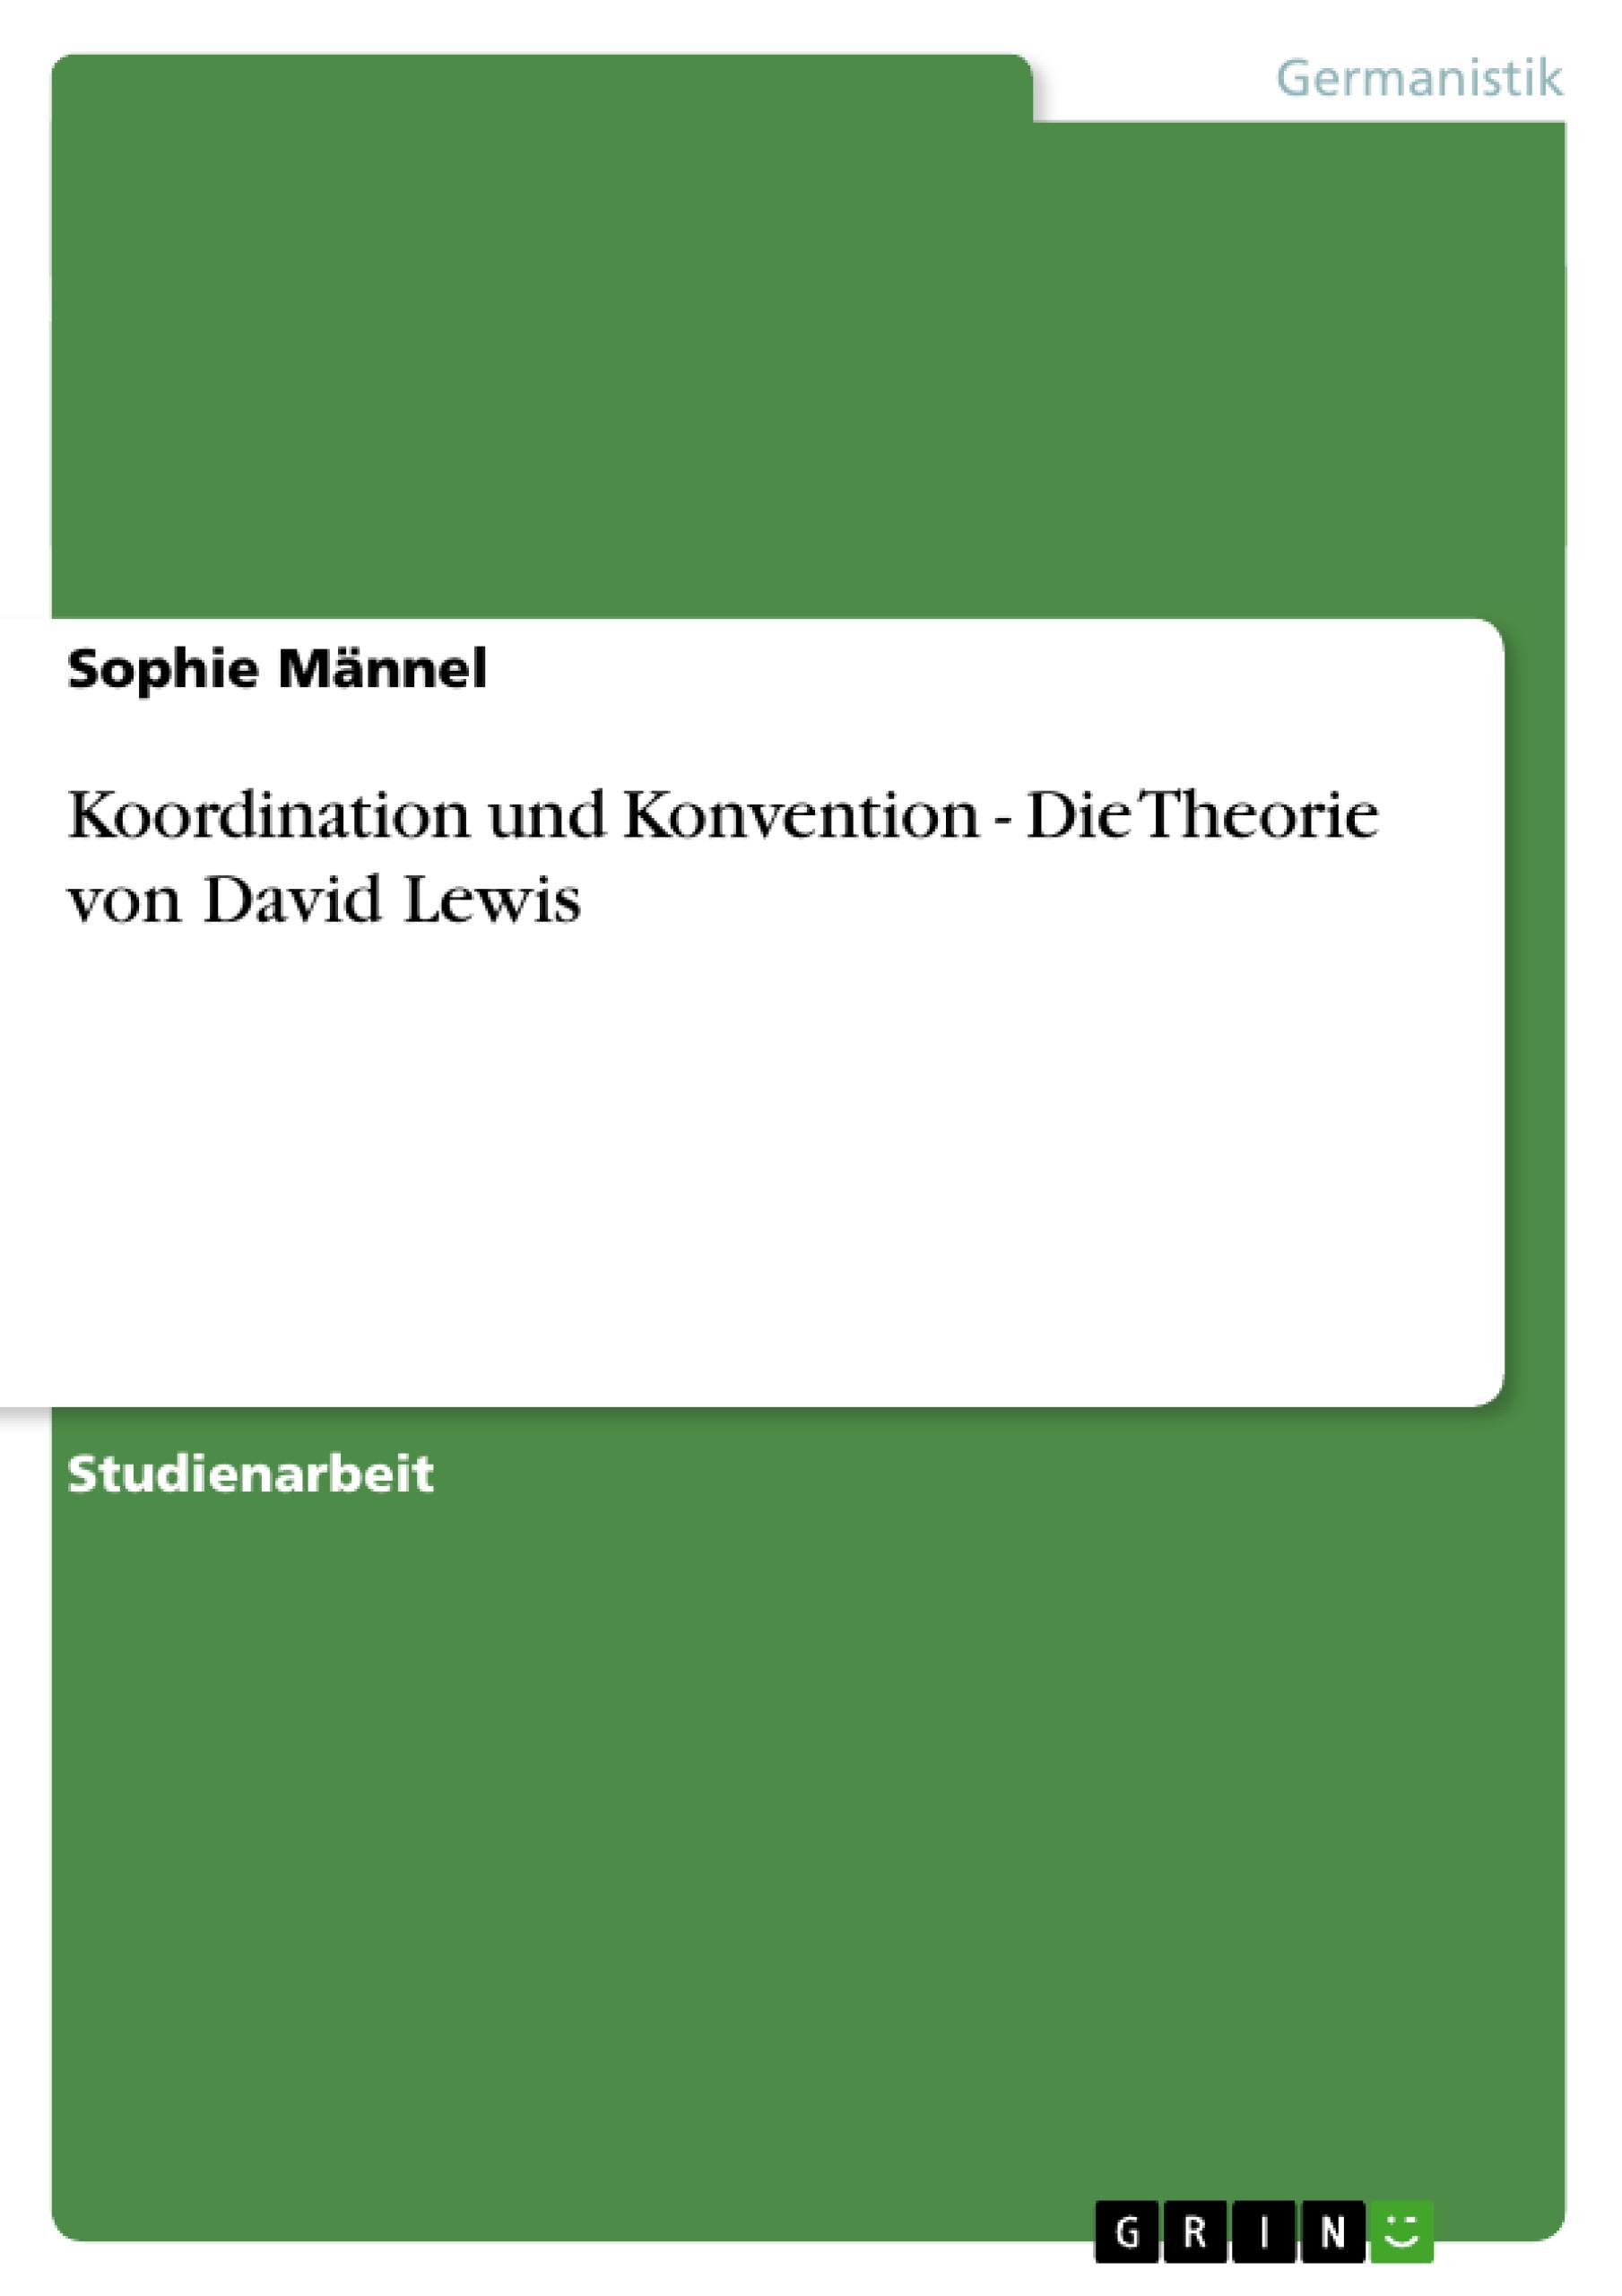 Koordination und Konvention - Die Theorie von David Lewis - Maennel, Sophie